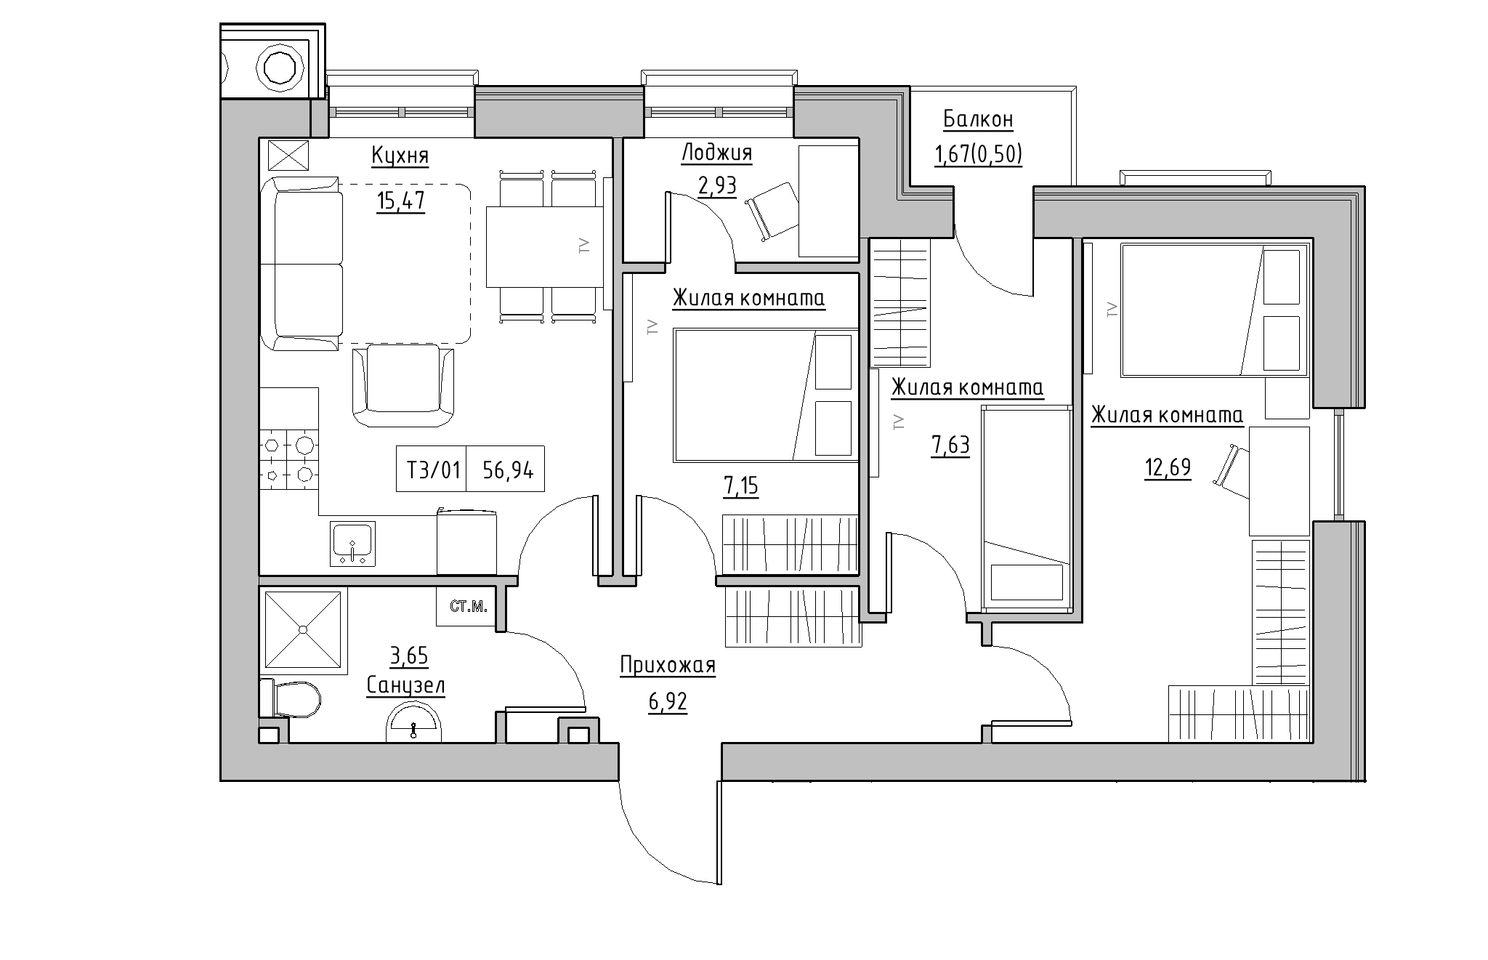 Планировка 3-к квартира площей 56.94м2, KS-010-04/0008.